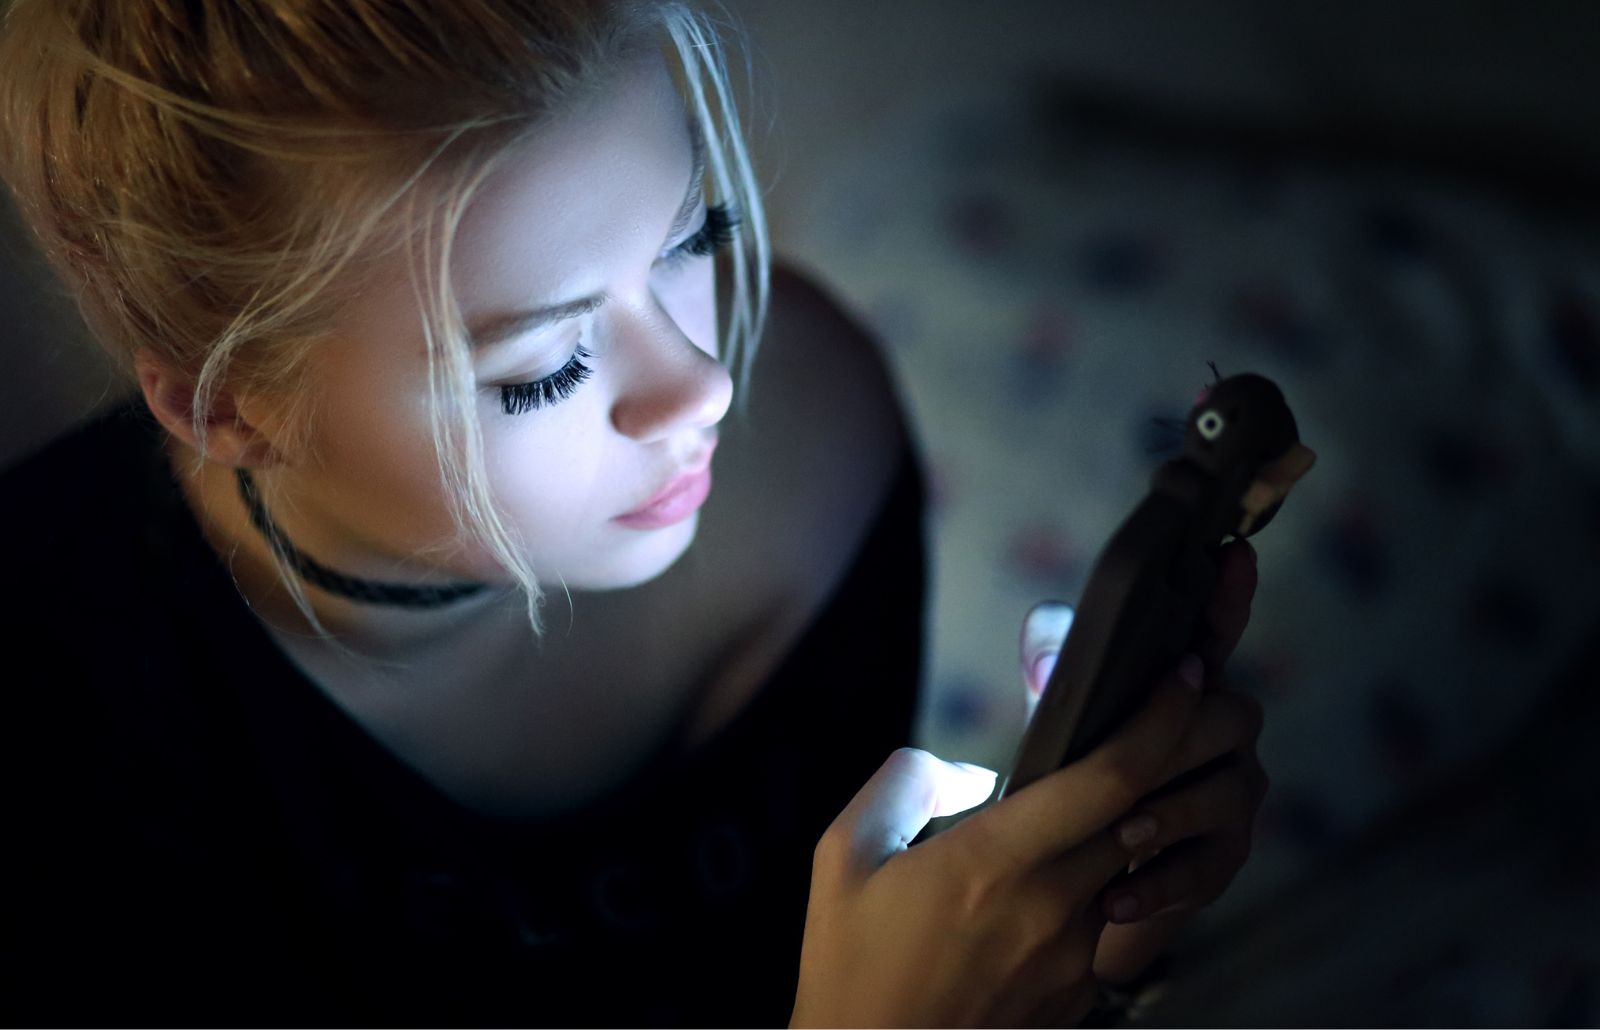 Ragazza giovane con lo smartphone in mano. la luce intensa dello schermo è riflessa sul viso.